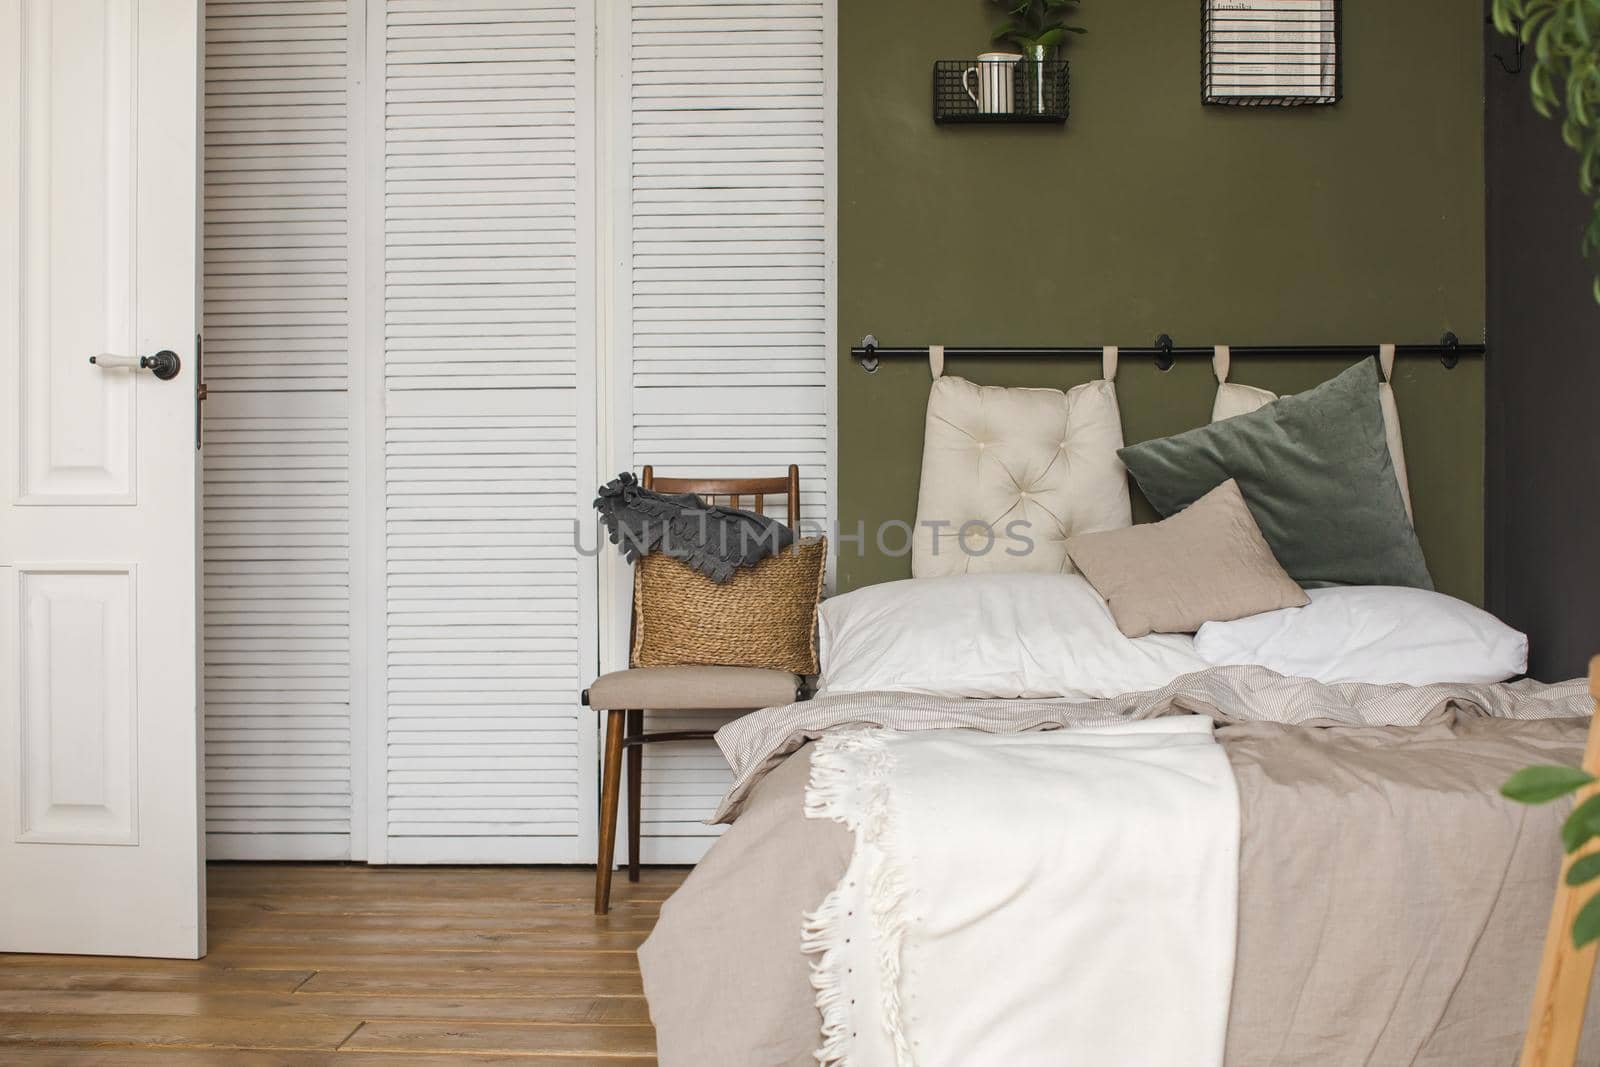 Cozy modern bedroom in daylight by Demkat